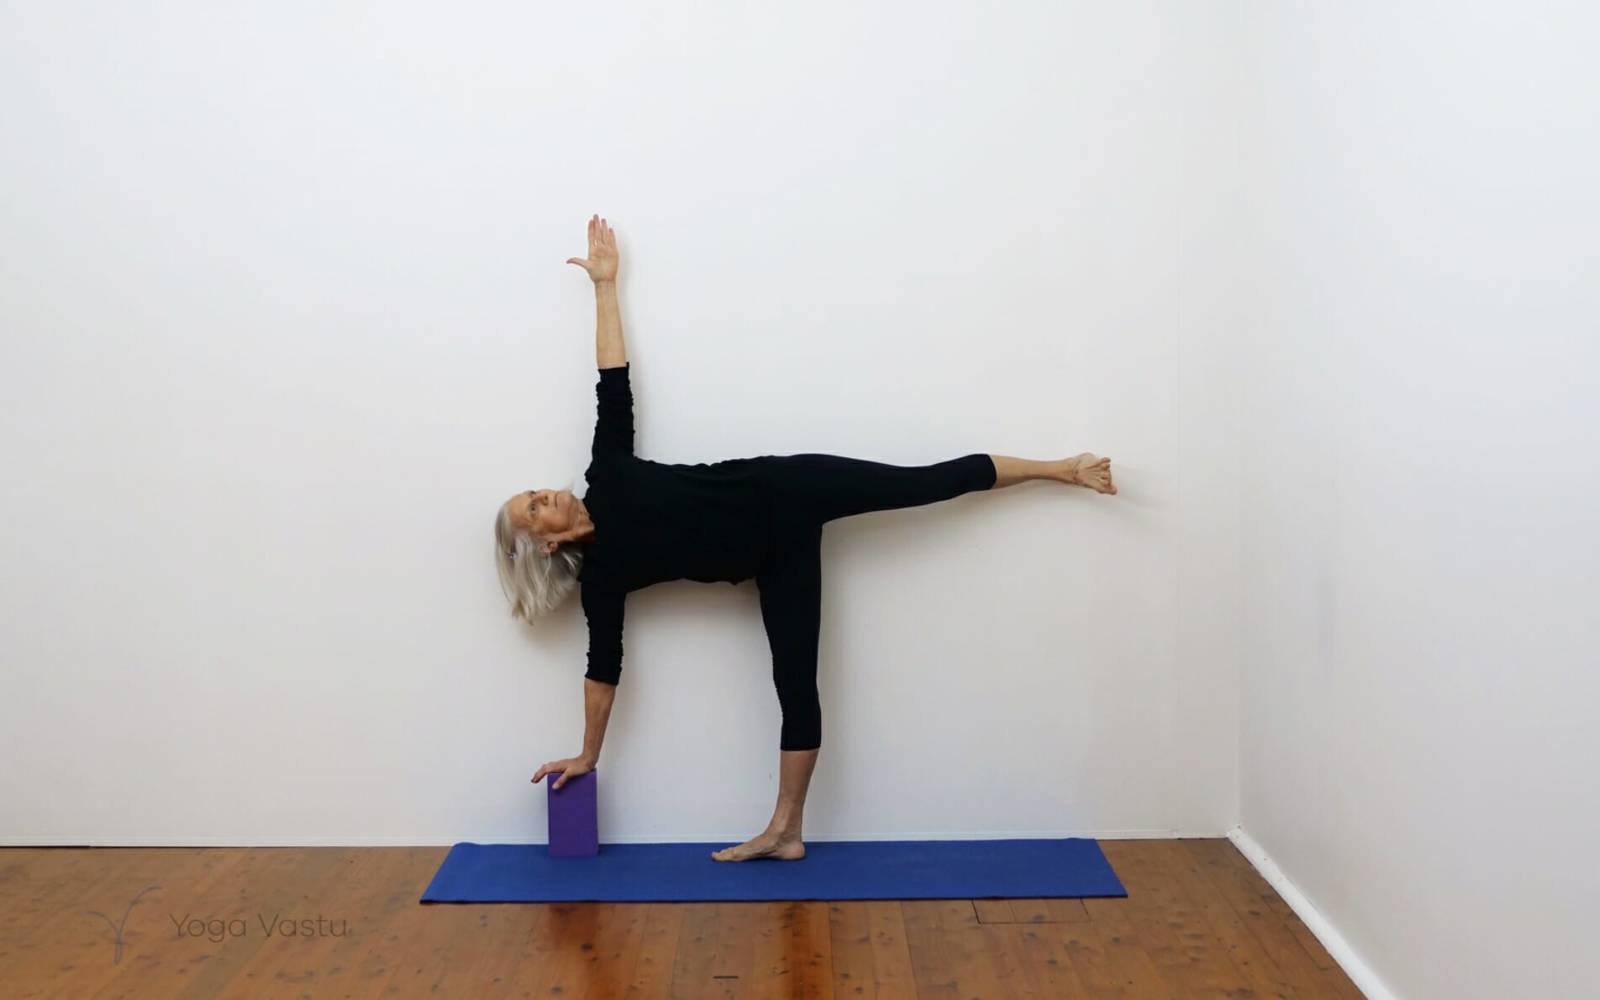 8 Standing Yoga Poses to Build Better Balance - Sacredtribeyoga